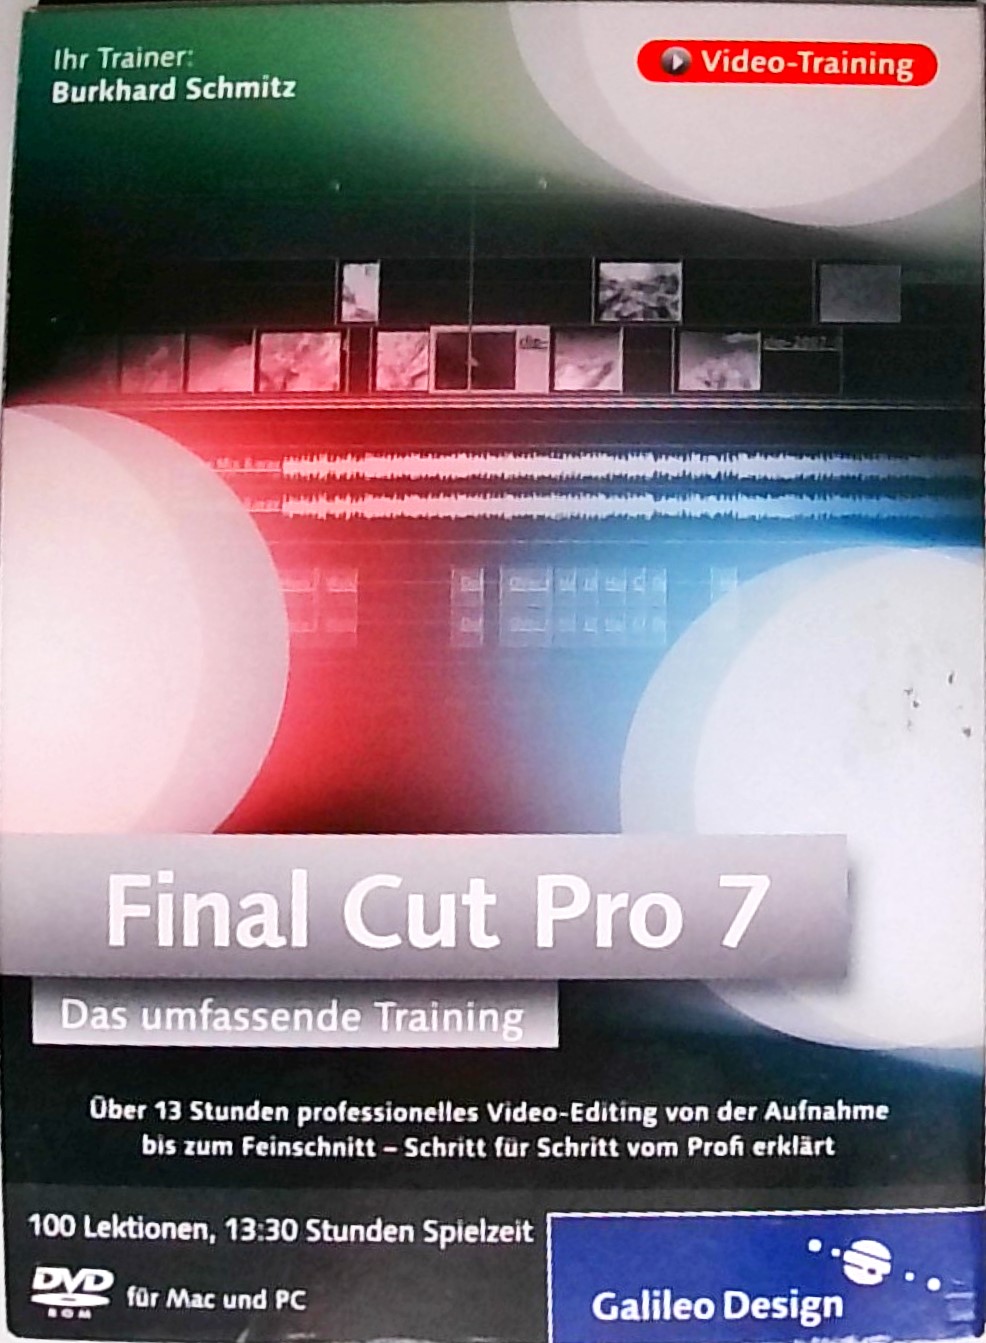 Final Cut Pro 7 - Umfassendes Training: Über 10 Stunden professionelles Video-Editing von Aufnahme bis Postproduktion  Auflage: 1 - Schmitz, Burkhard